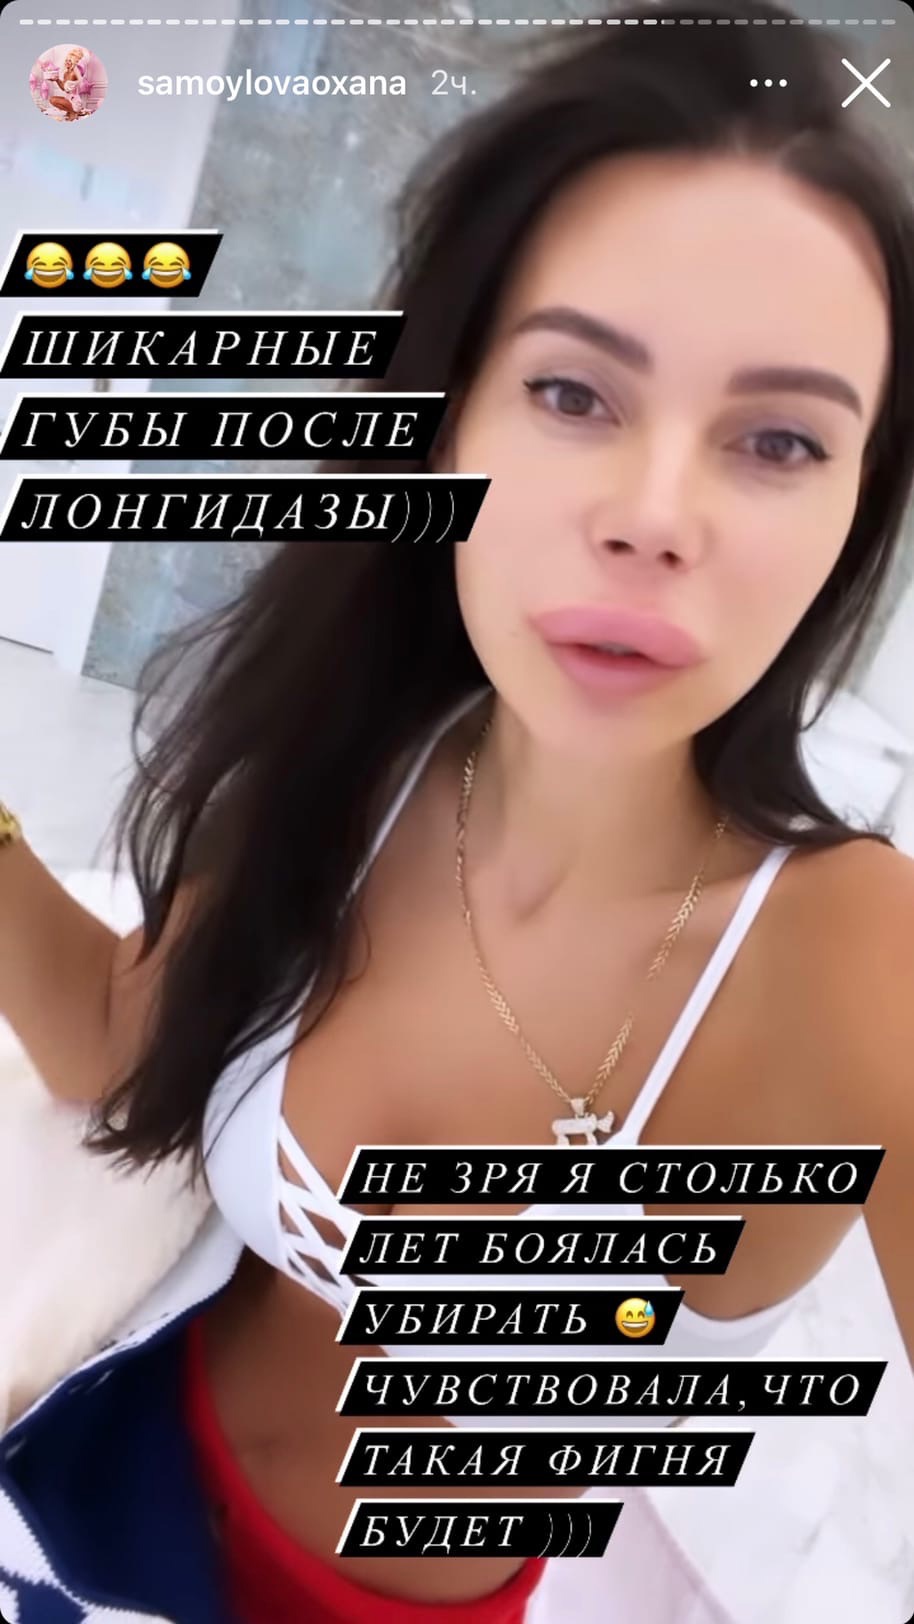 "Слабонервным не смотреть": Оксана Самойлова ужаснула огромными губами
